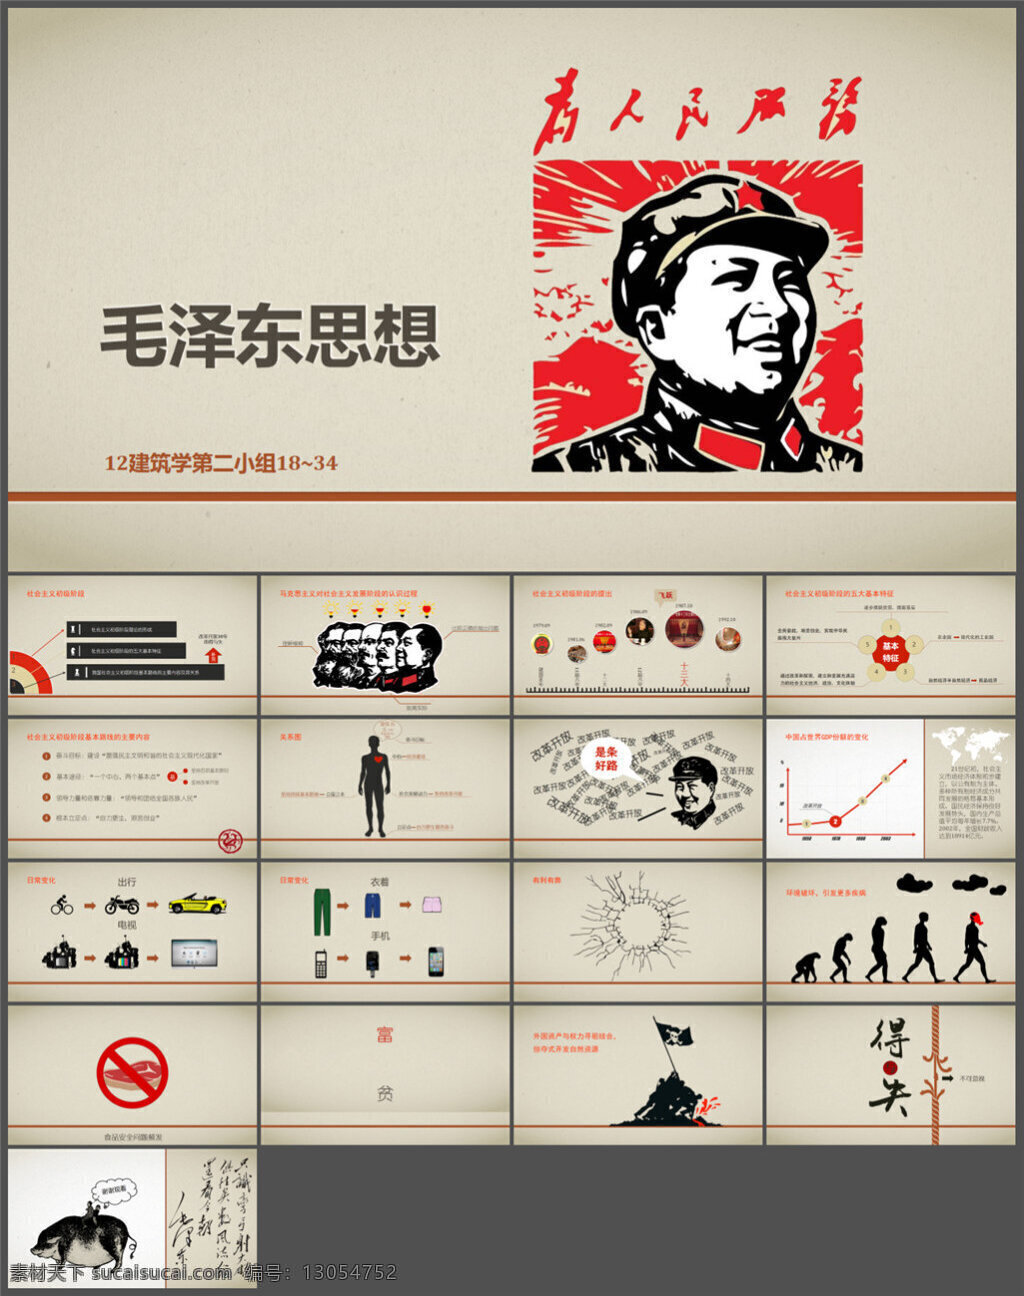 毛泽东思想 文革 风 模板 图表 制作 多媒体 企业 动态 pptx 灰色